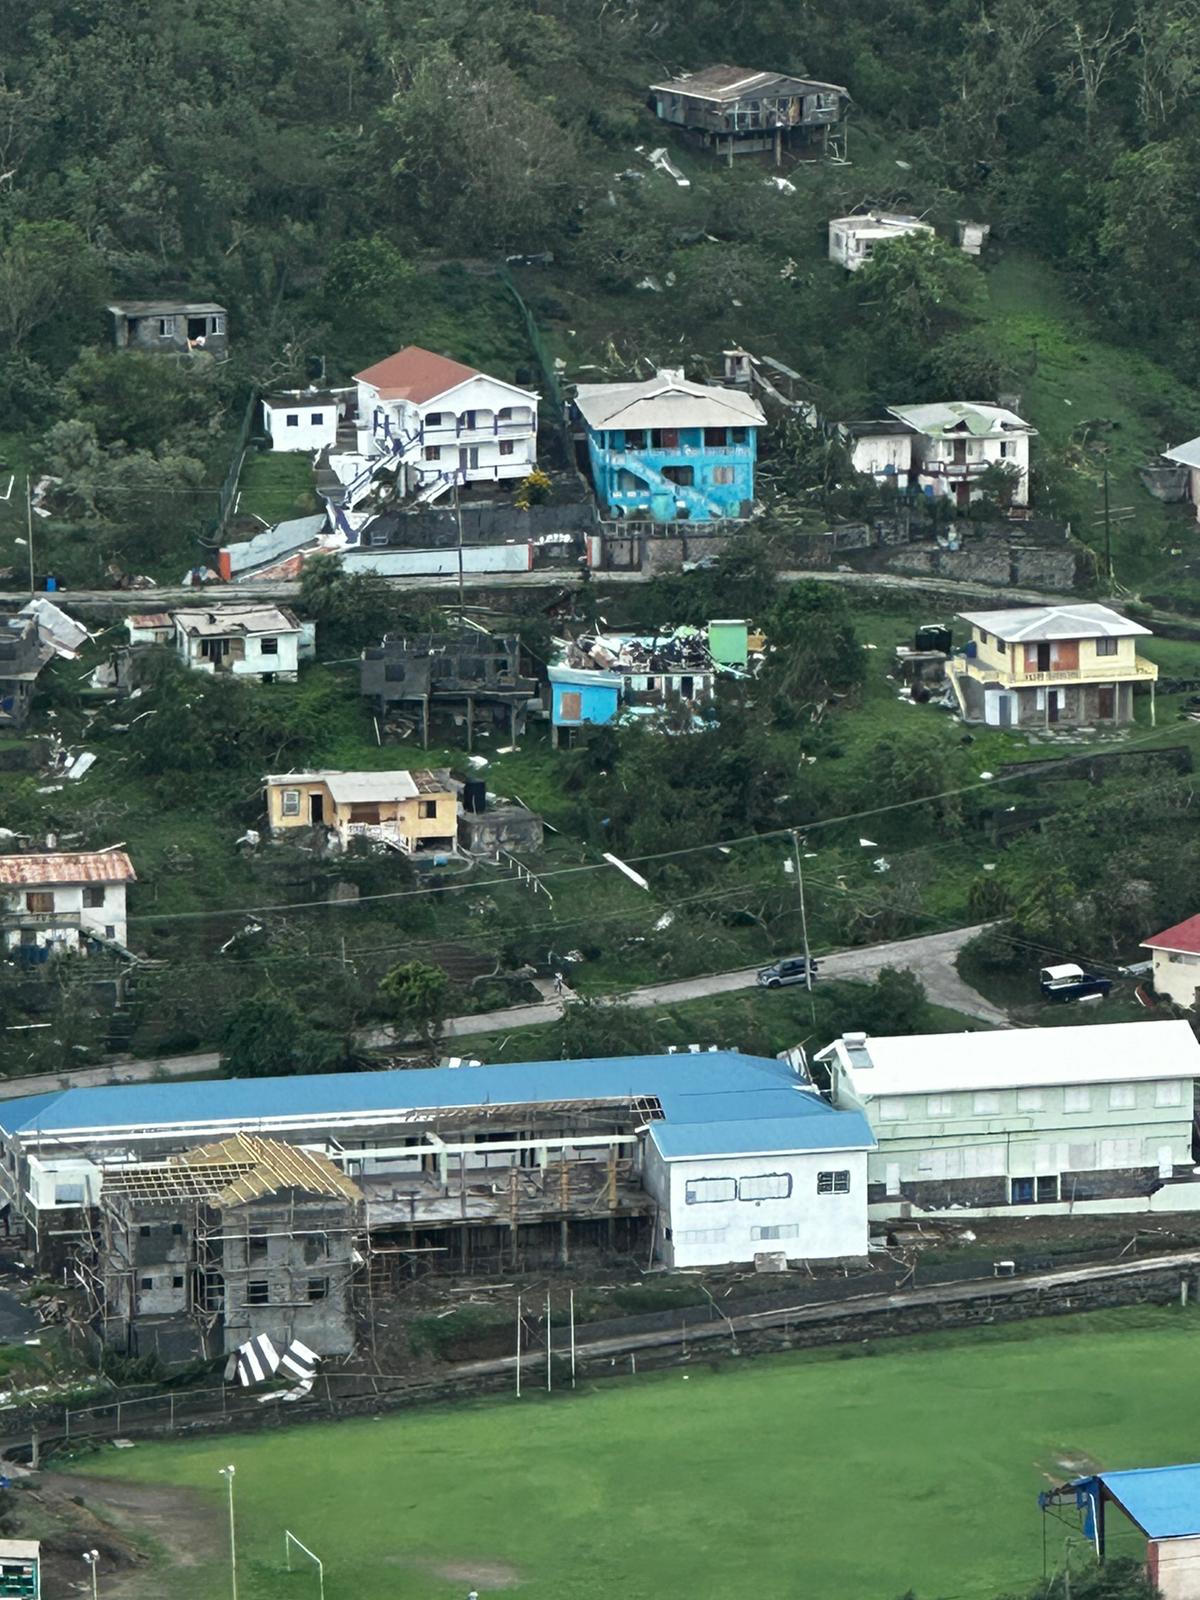 في الصورة، دمر إعصار بريل عدة منازل في جزيرة بيكيا